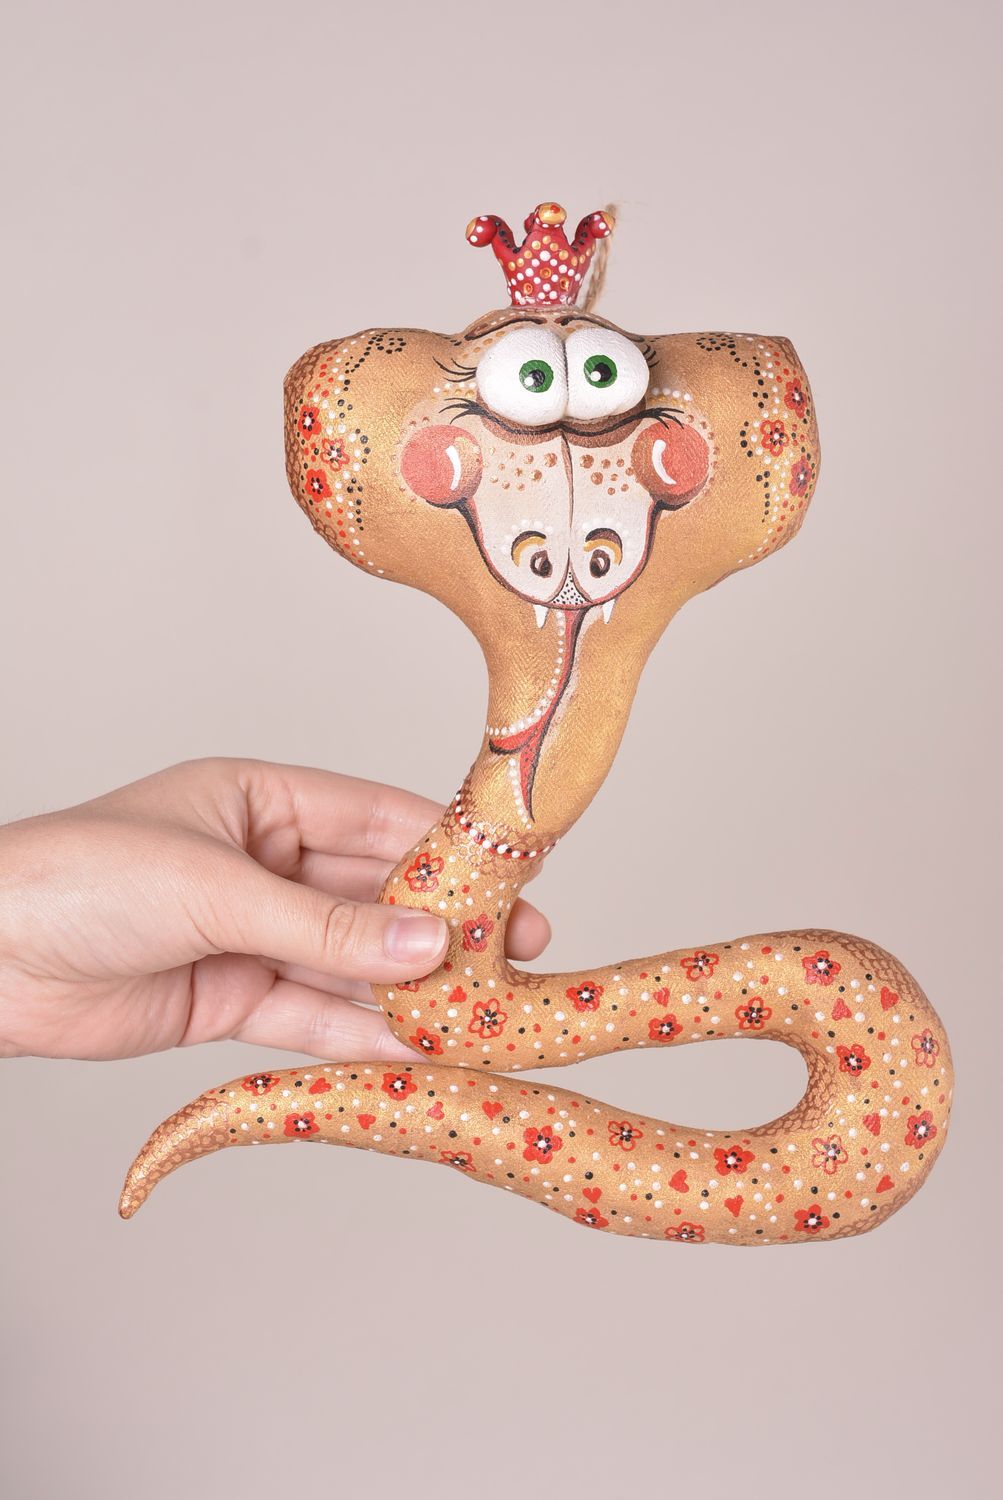 Игрушка ручной работы игрушка змея оригинальная игрушка для декора дома фото 2